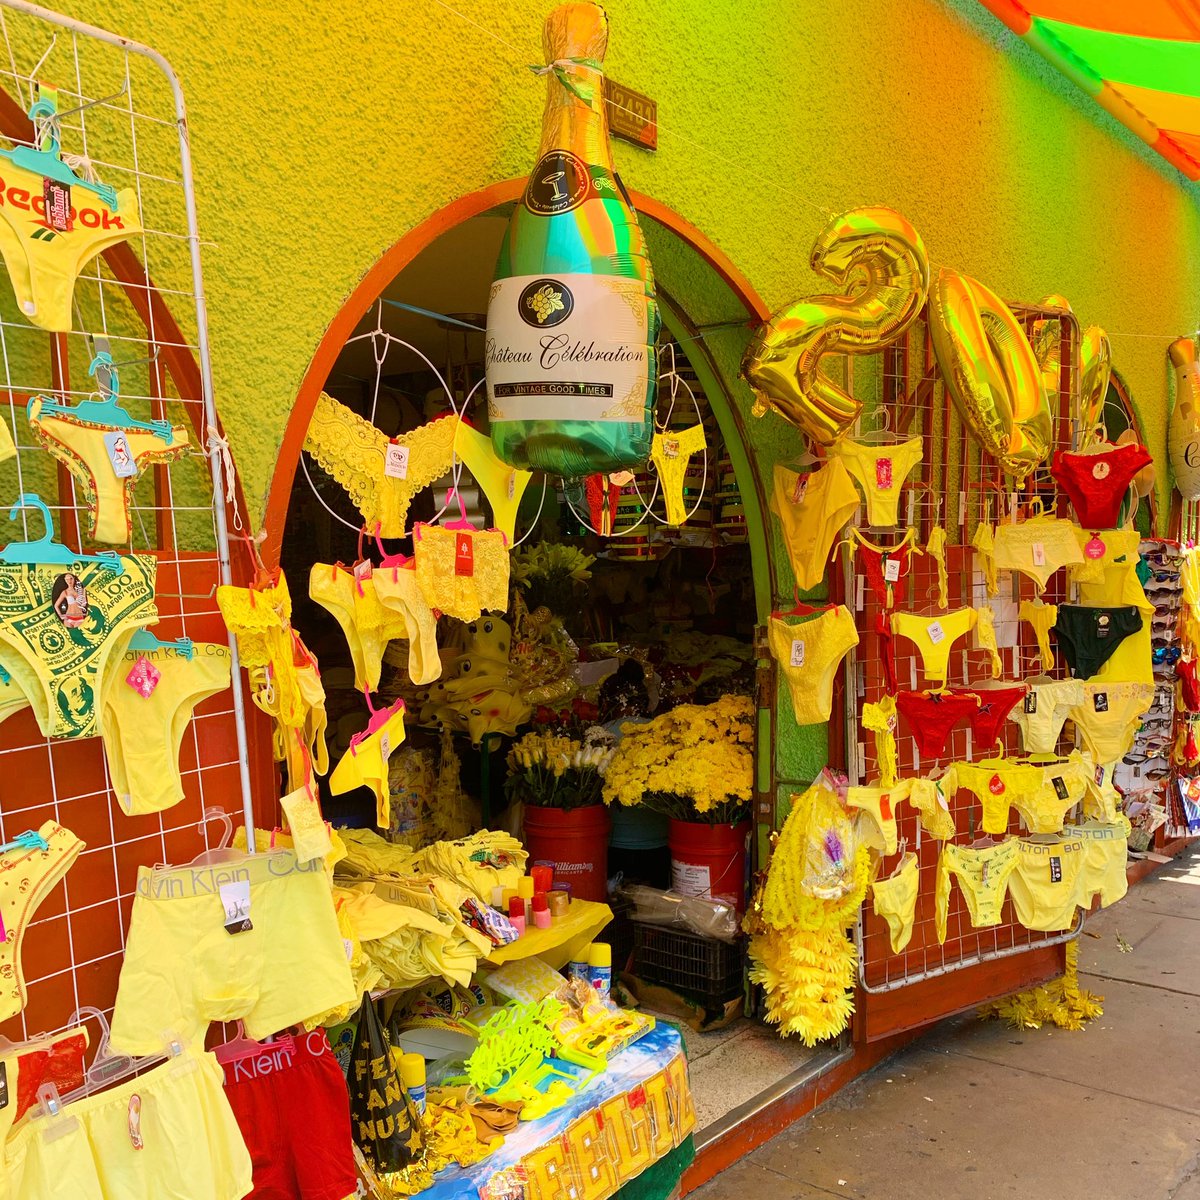 ハポティーナ ペルー いよいよ大晦日 ペルーでは 幸運を呼ぶと言われる黄色い下着を大量販売中 ちなみに赤い下着は恋愛運アップ 毎年のことながら 街中パンツでいまだにウケるww みんな黄色いパンツで新年迎えてね 良いお年を